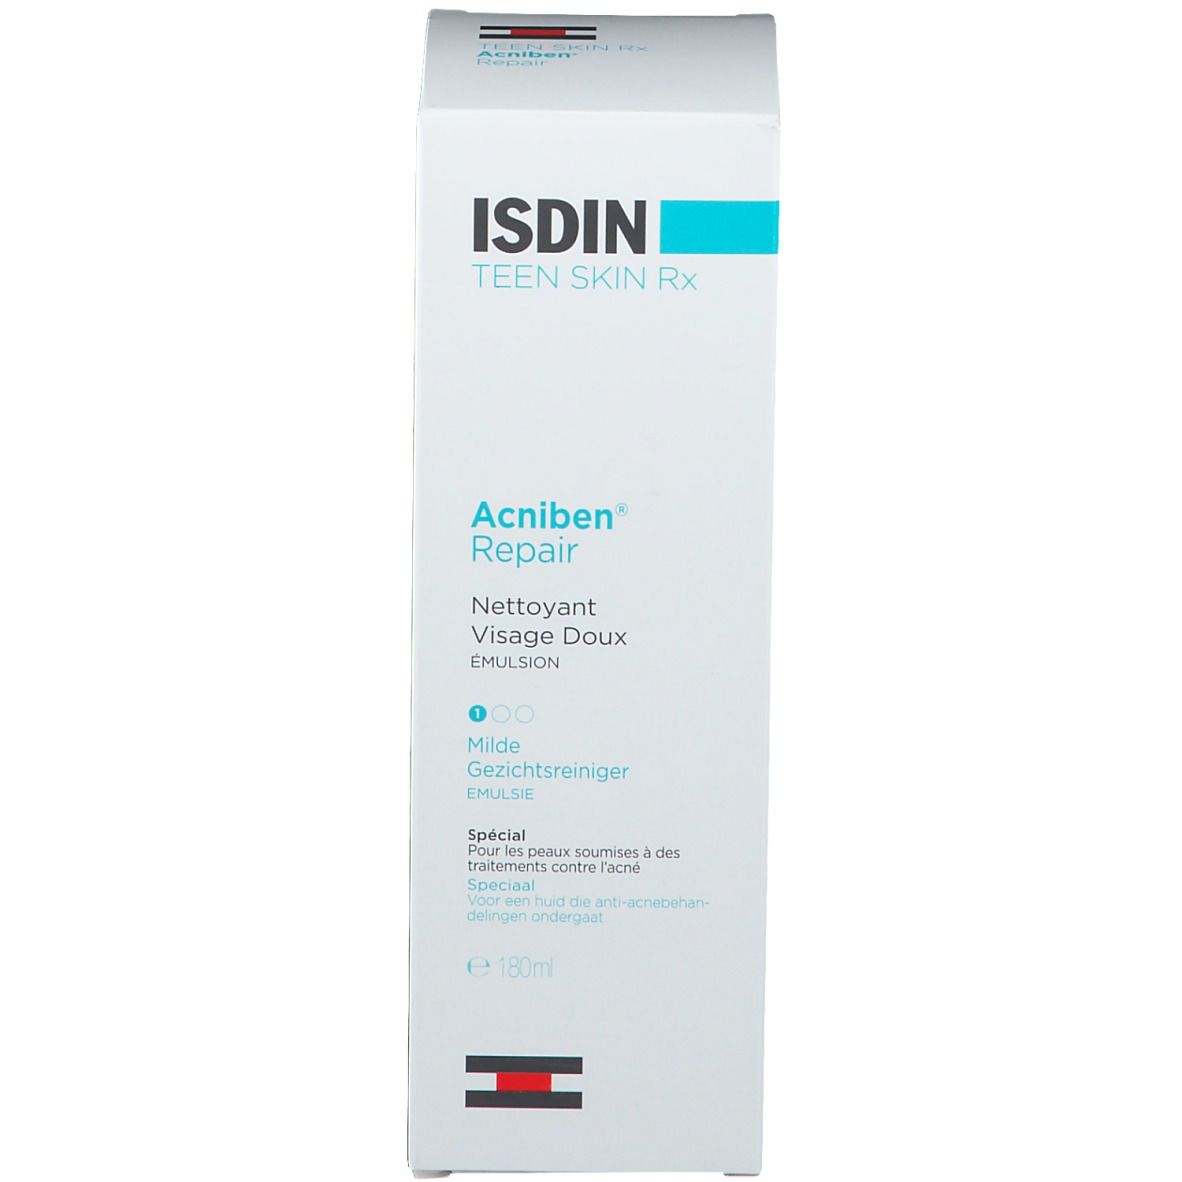 ISDIN Teen Skin RX Acniben® Repair